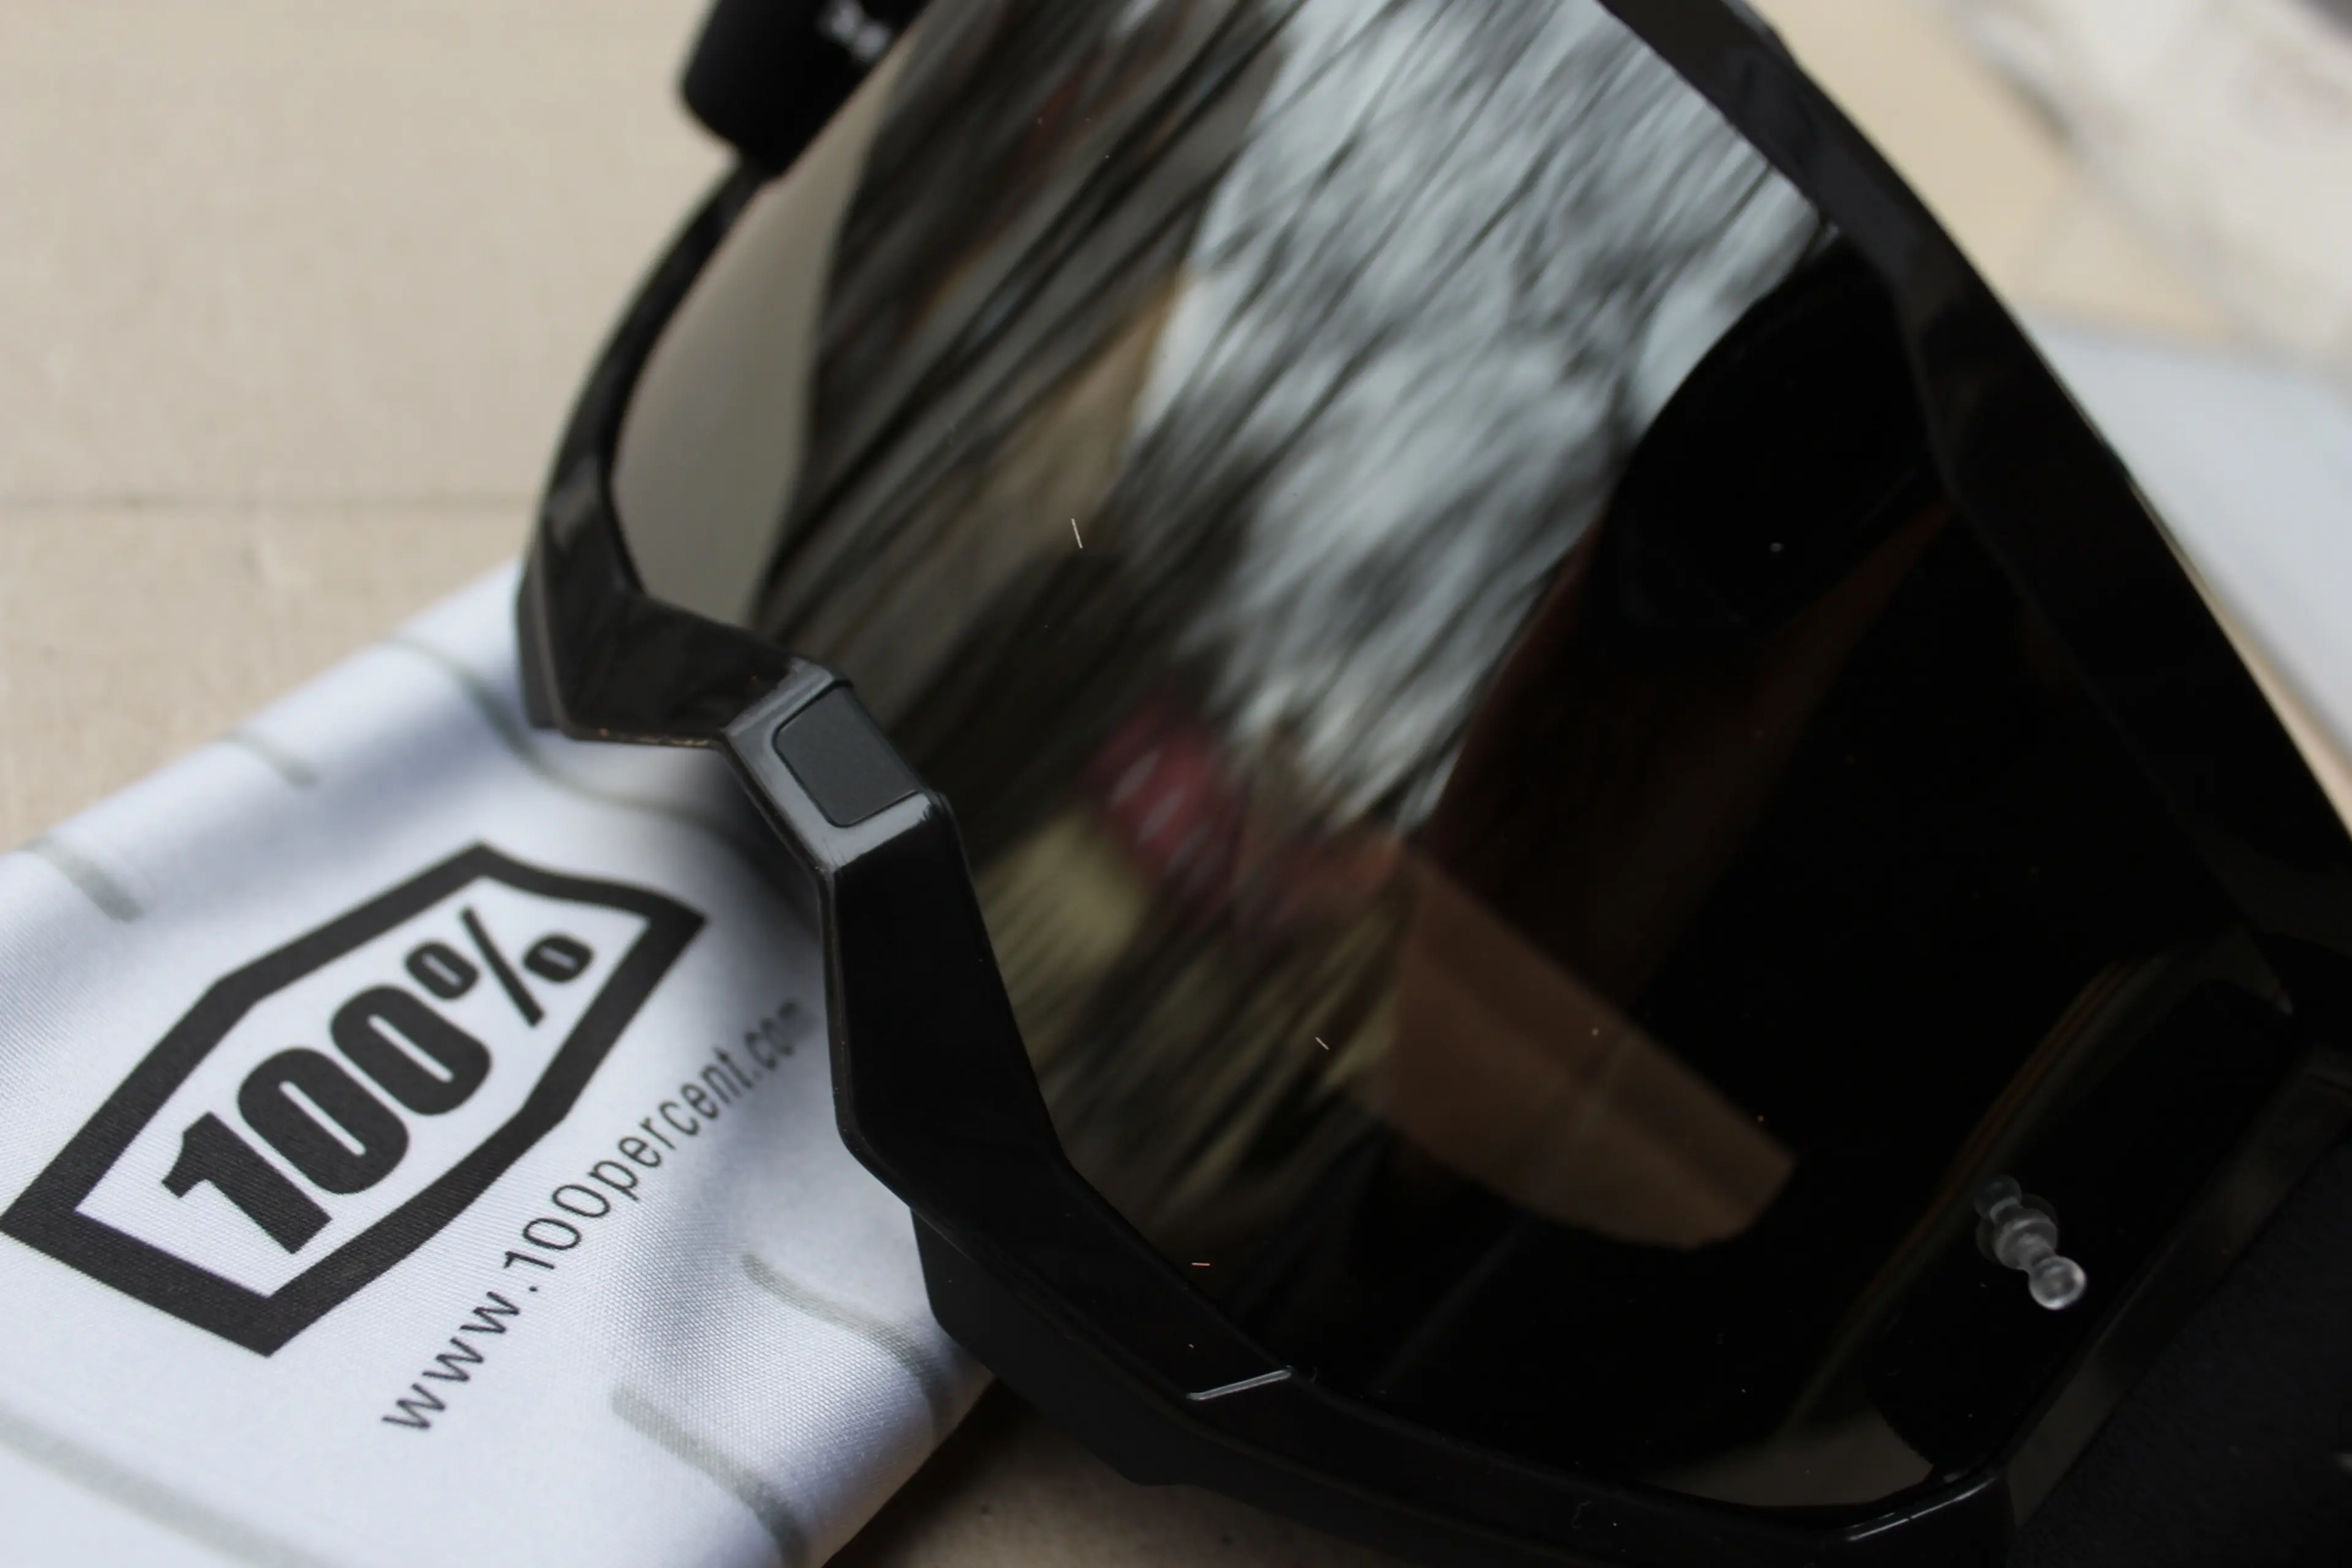 Image 100% Strata 2 Stealth Black - Goggle Silver Mirror Lens + sticker